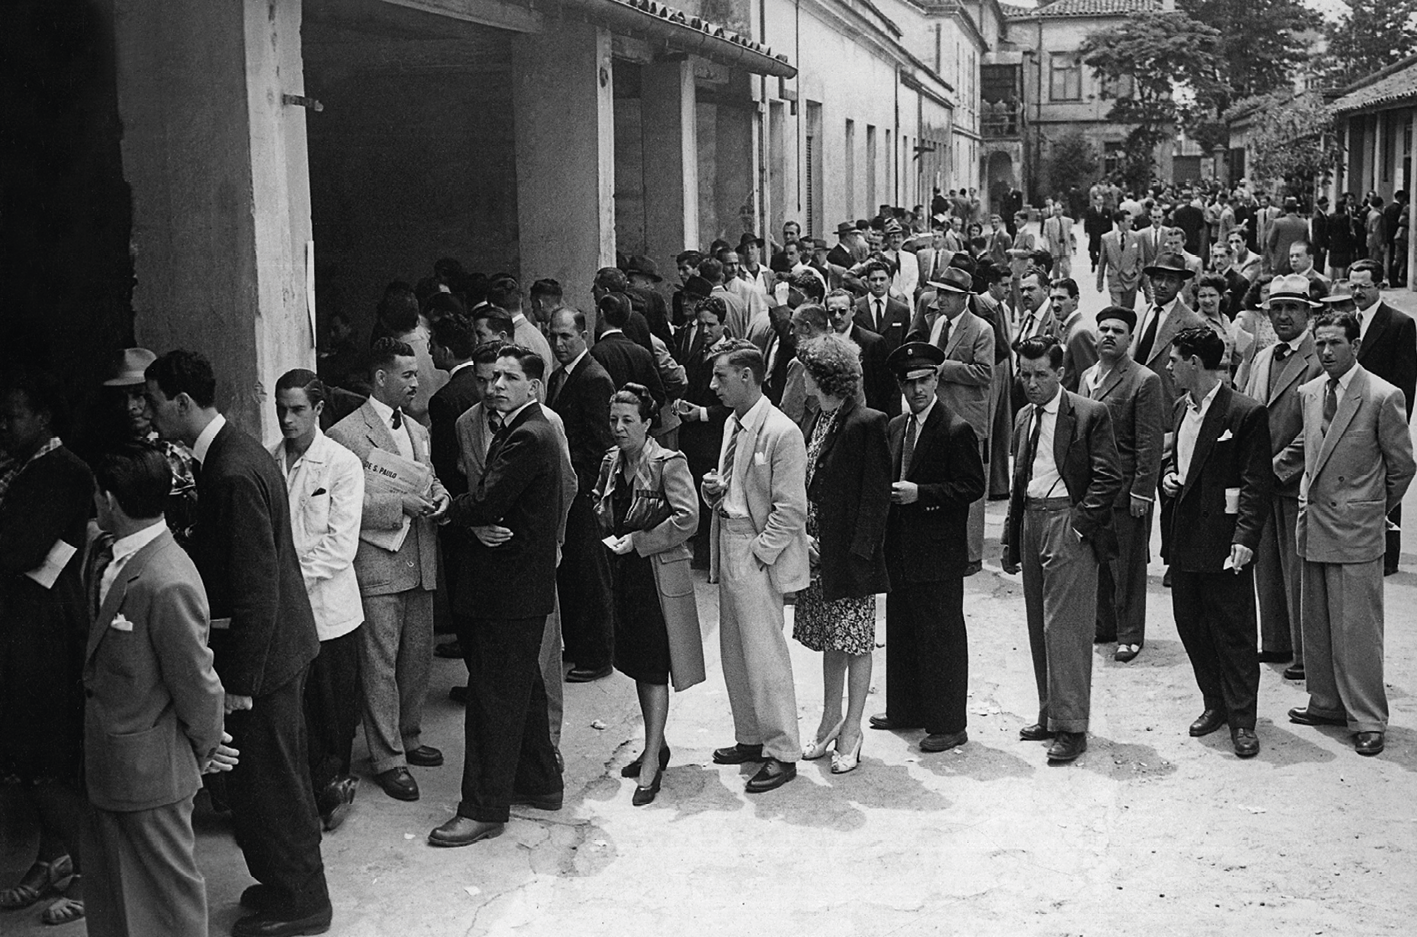 Fotografia em preto e branco. Homens e mulheres trajados socialmente dispostos em filas na porta de um edifício.